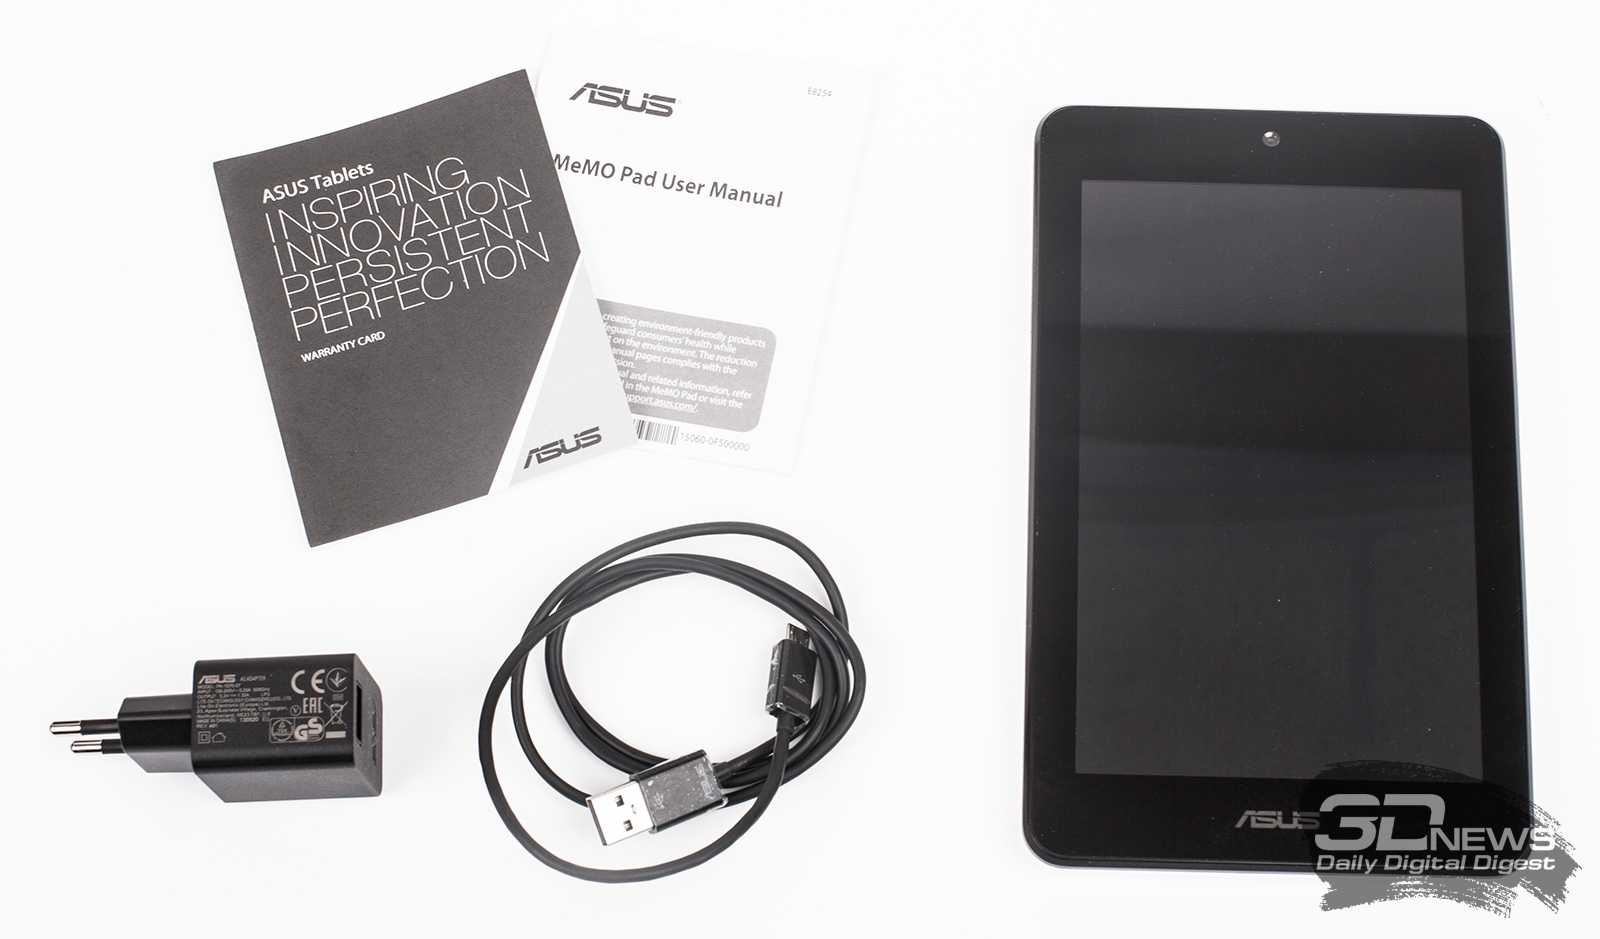 Asus memo pad hd 7 me173x 8gb (синий) - купить , скидки, цена, отзывы, обзор, характеристики - планшеты